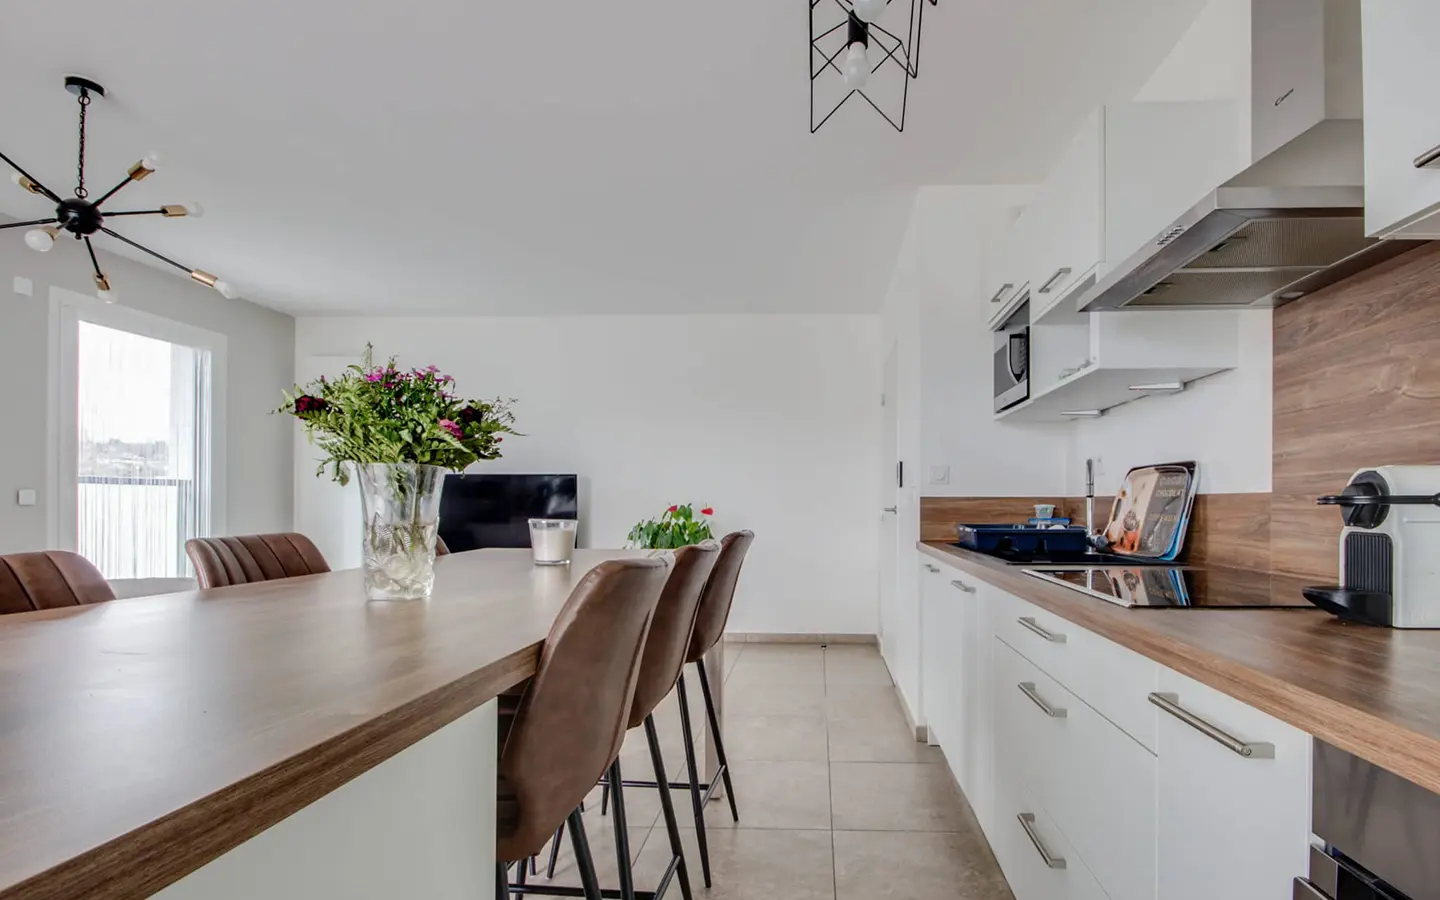 Achat immobilier appartement t3 avec terrasse rénovée Annecy-le-vieux cuisine